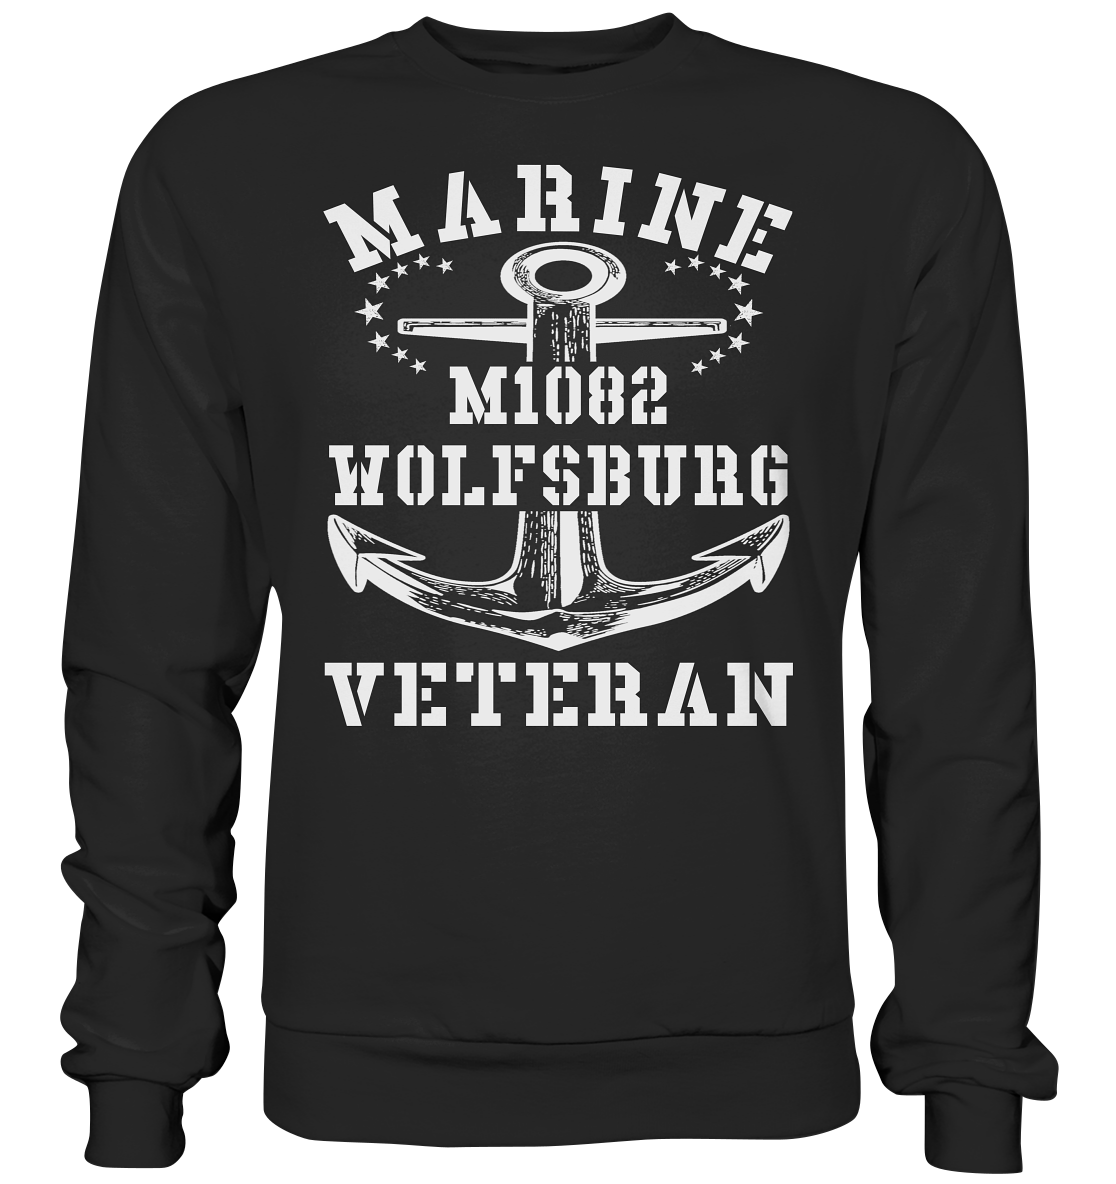 MARINE VETERAN M1082 WOLFSBURG - Premium Sweatshirt